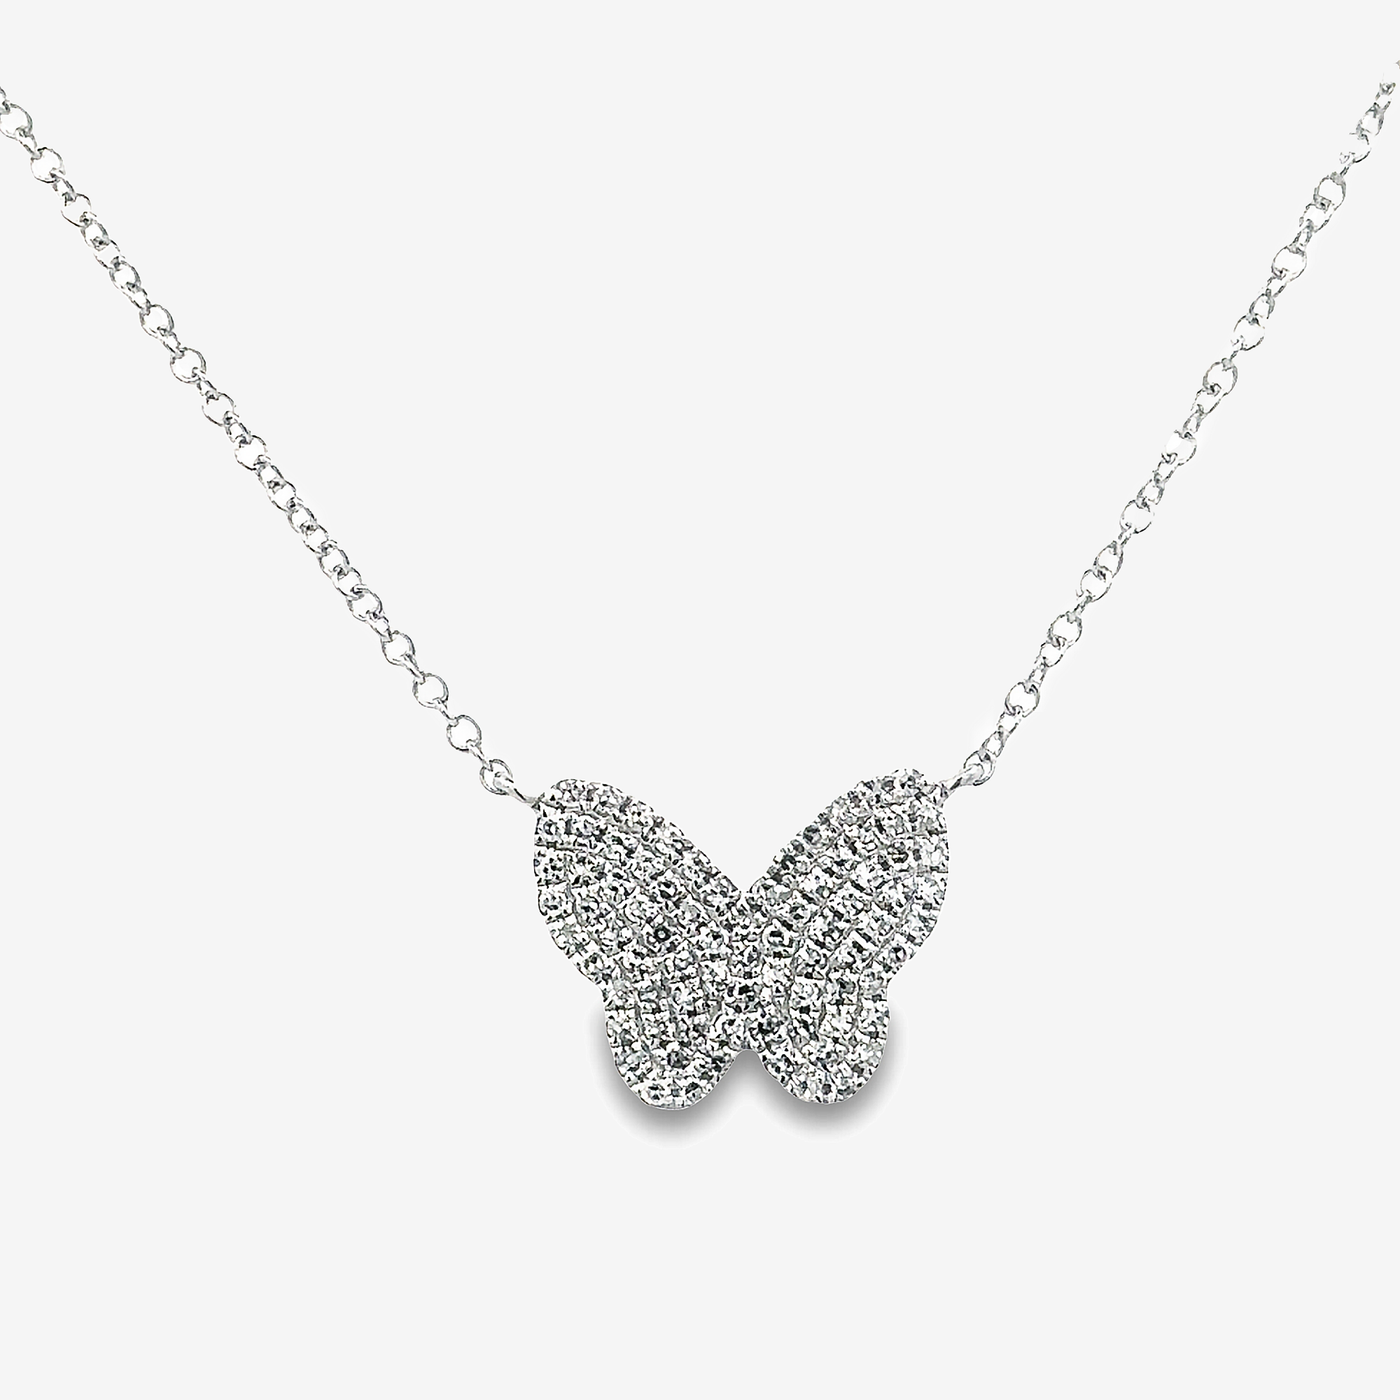 pave diamond butterfly necklace